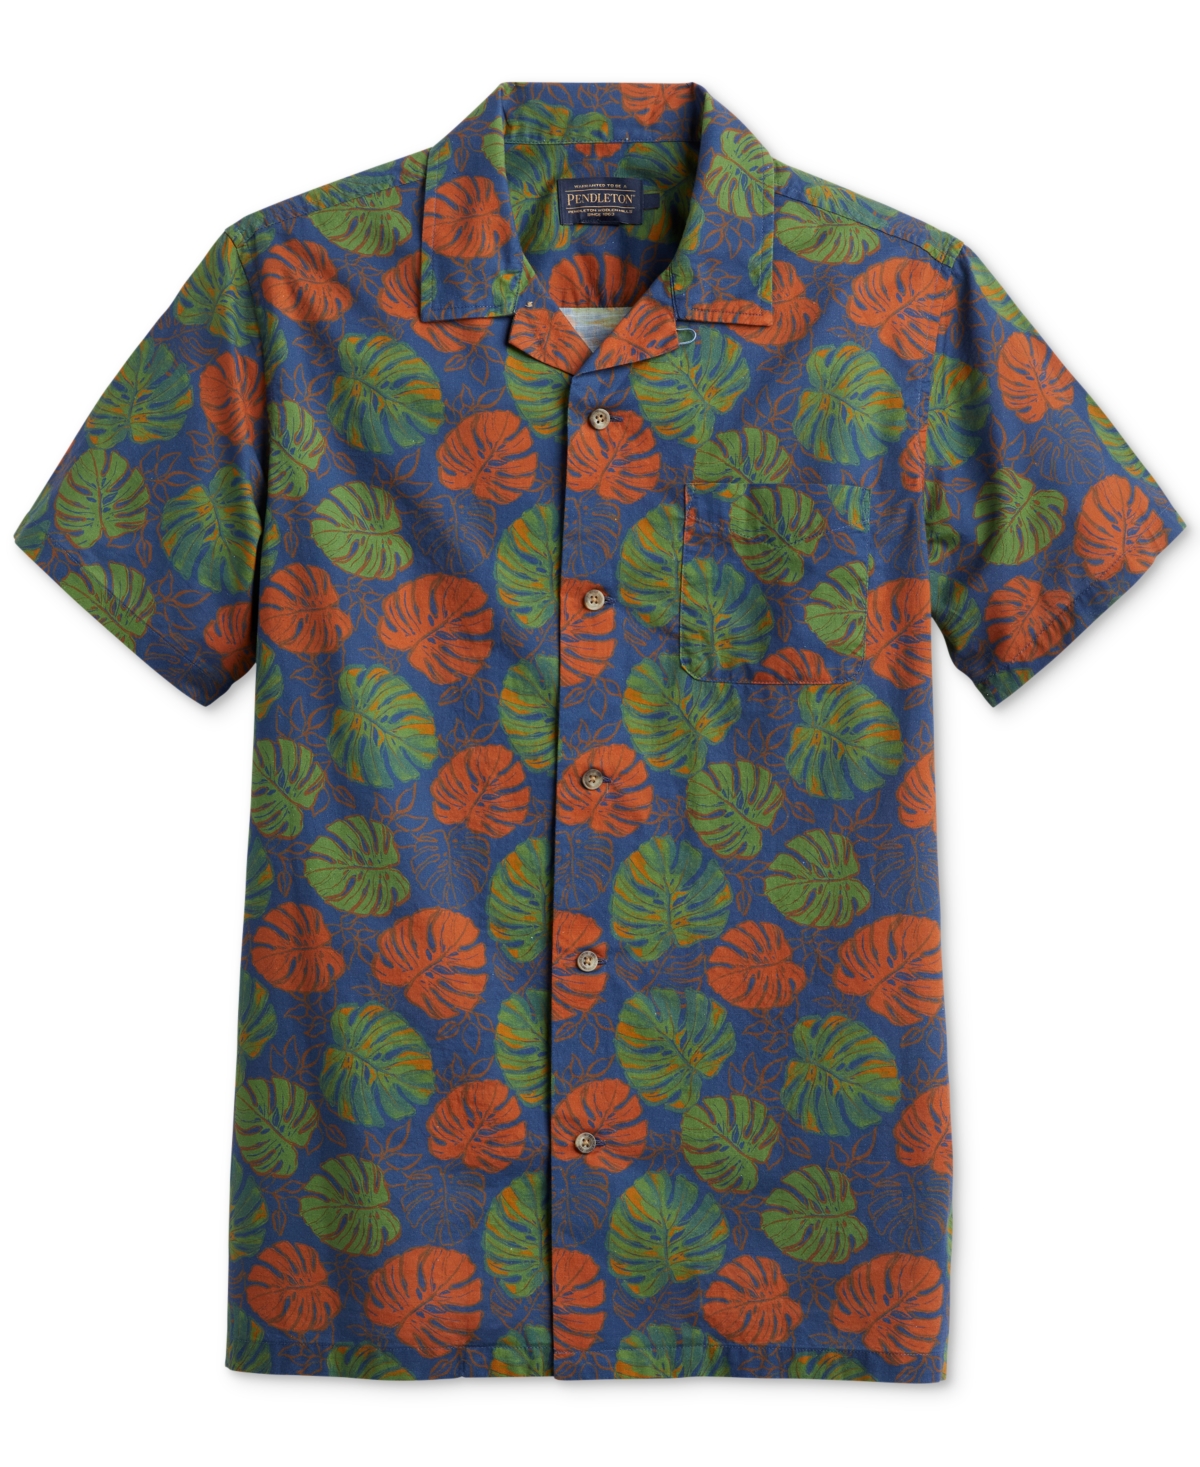 Men's Aloha Island Print Short Sleeve Button-Front Shirt - Dune Rider Blue